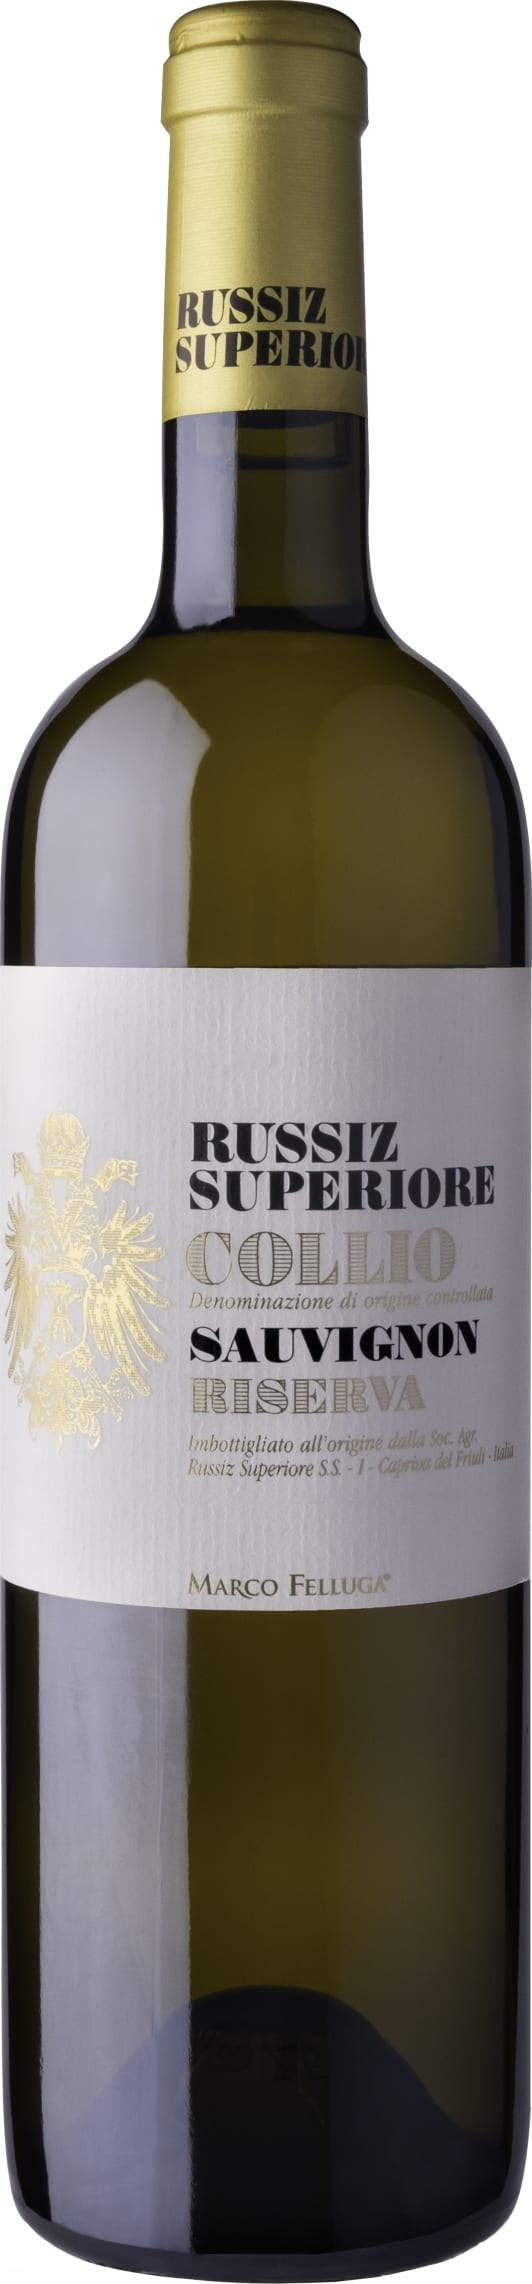 Russiz Superiore Sauvignon Blanc Riserva, Collio 2017 75cl - Buy Russiz Superiore Wines from GREAT WINES DIRECT wine shop